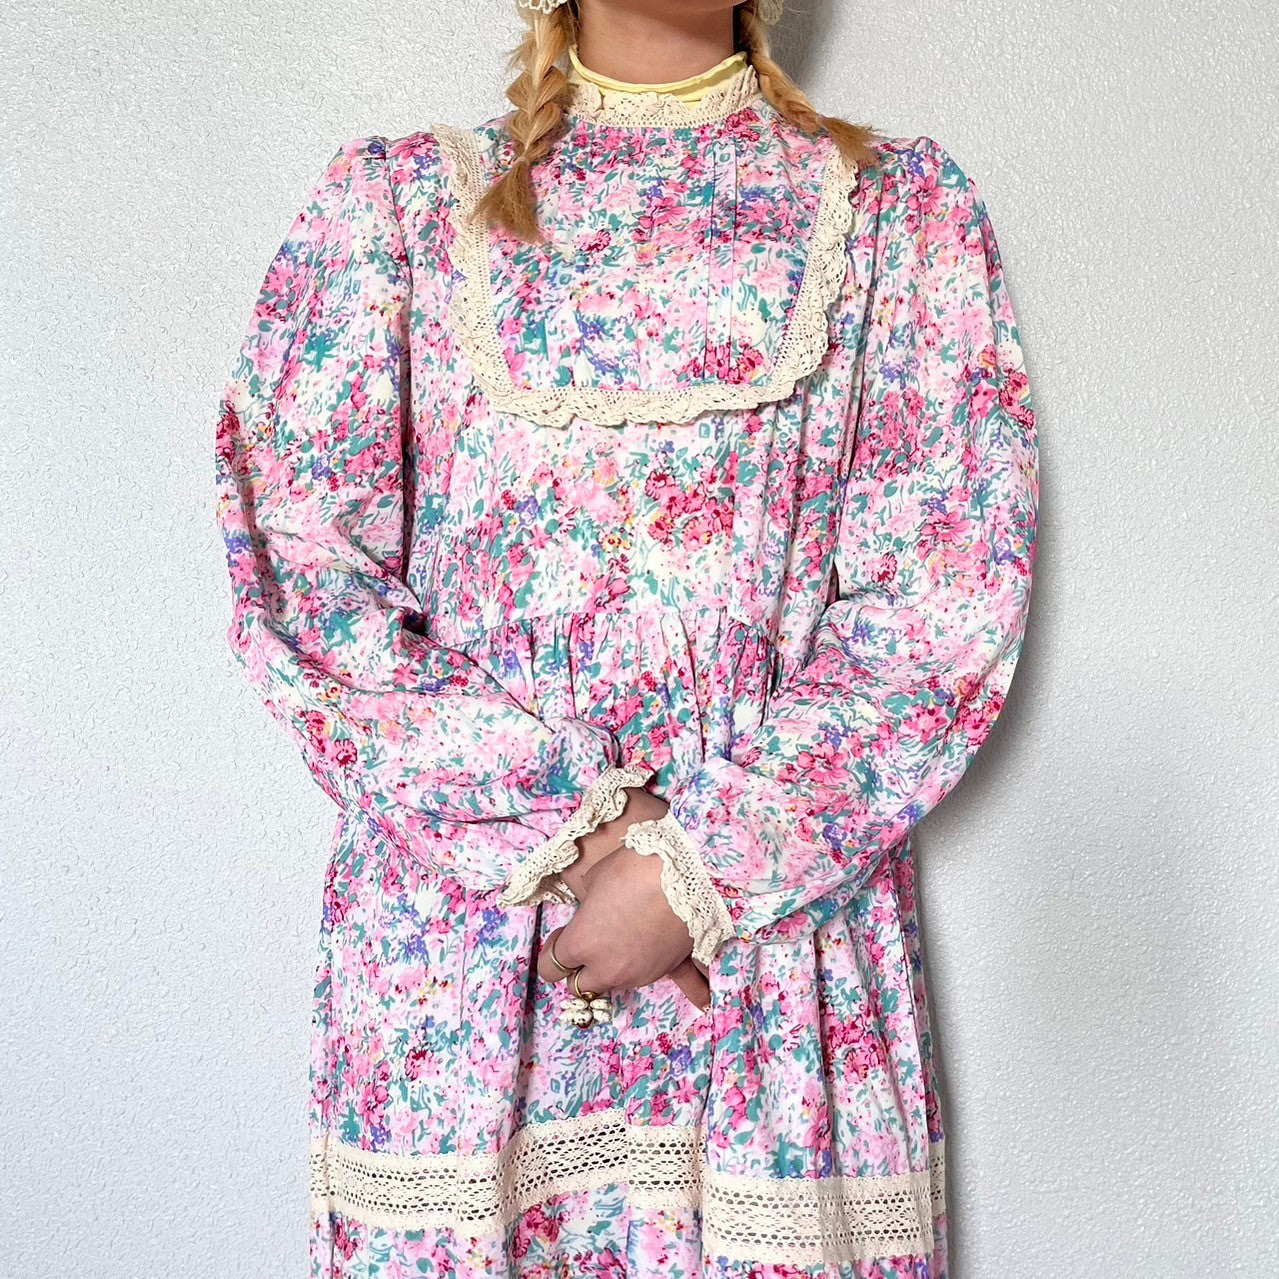 RIRI's select-レトロガーリー花柄ワンピース| own it(オウンイット)公式| 多系統女子| 多系統ファッション